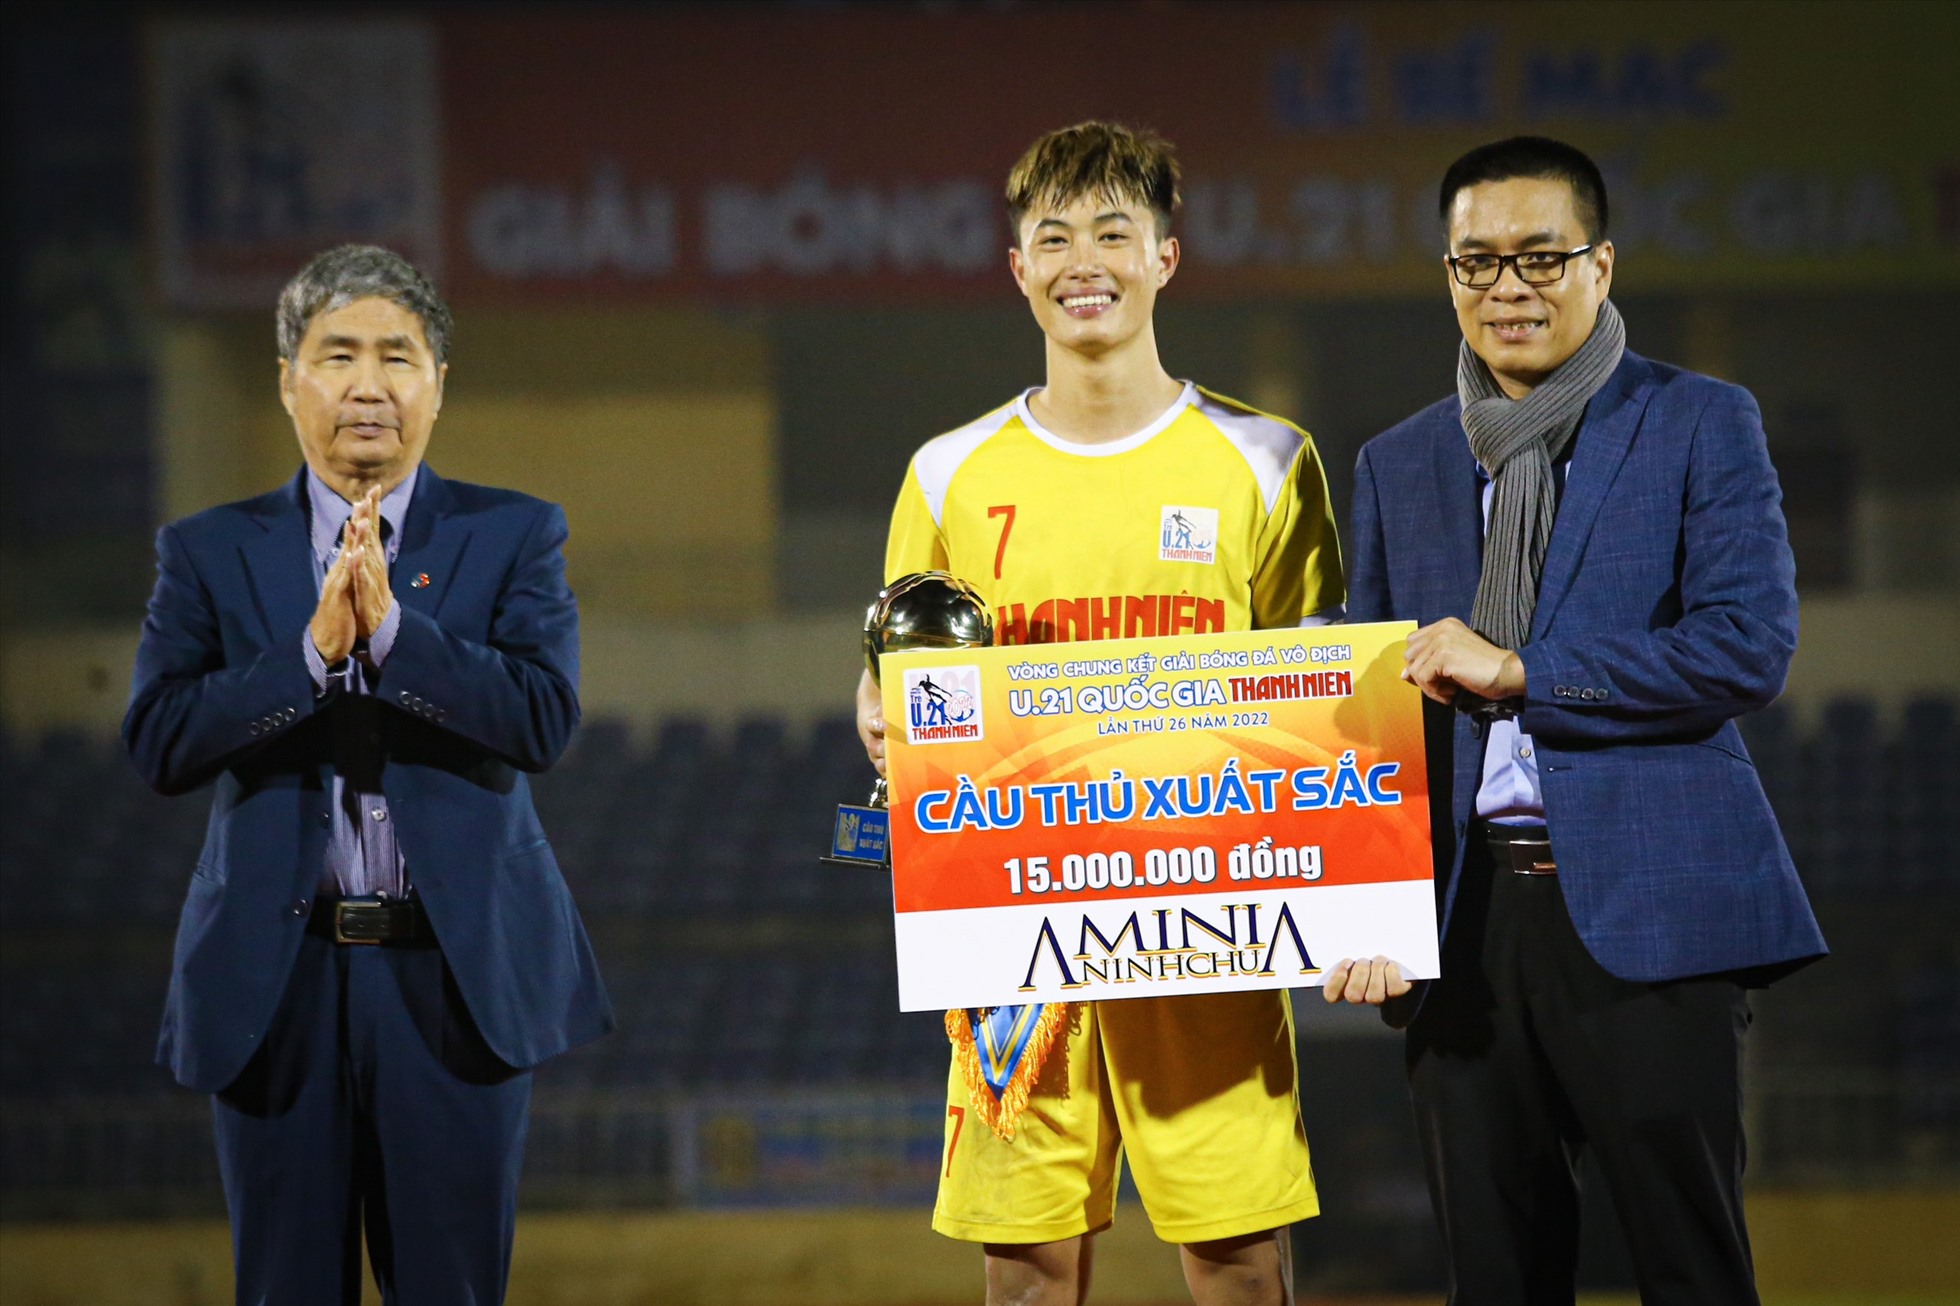 Danh hiệu cầu thủ xuất sắc nhất trận chung kết cho cầu thủ Nguyễn Văn Trường của U21 Hà Nội.